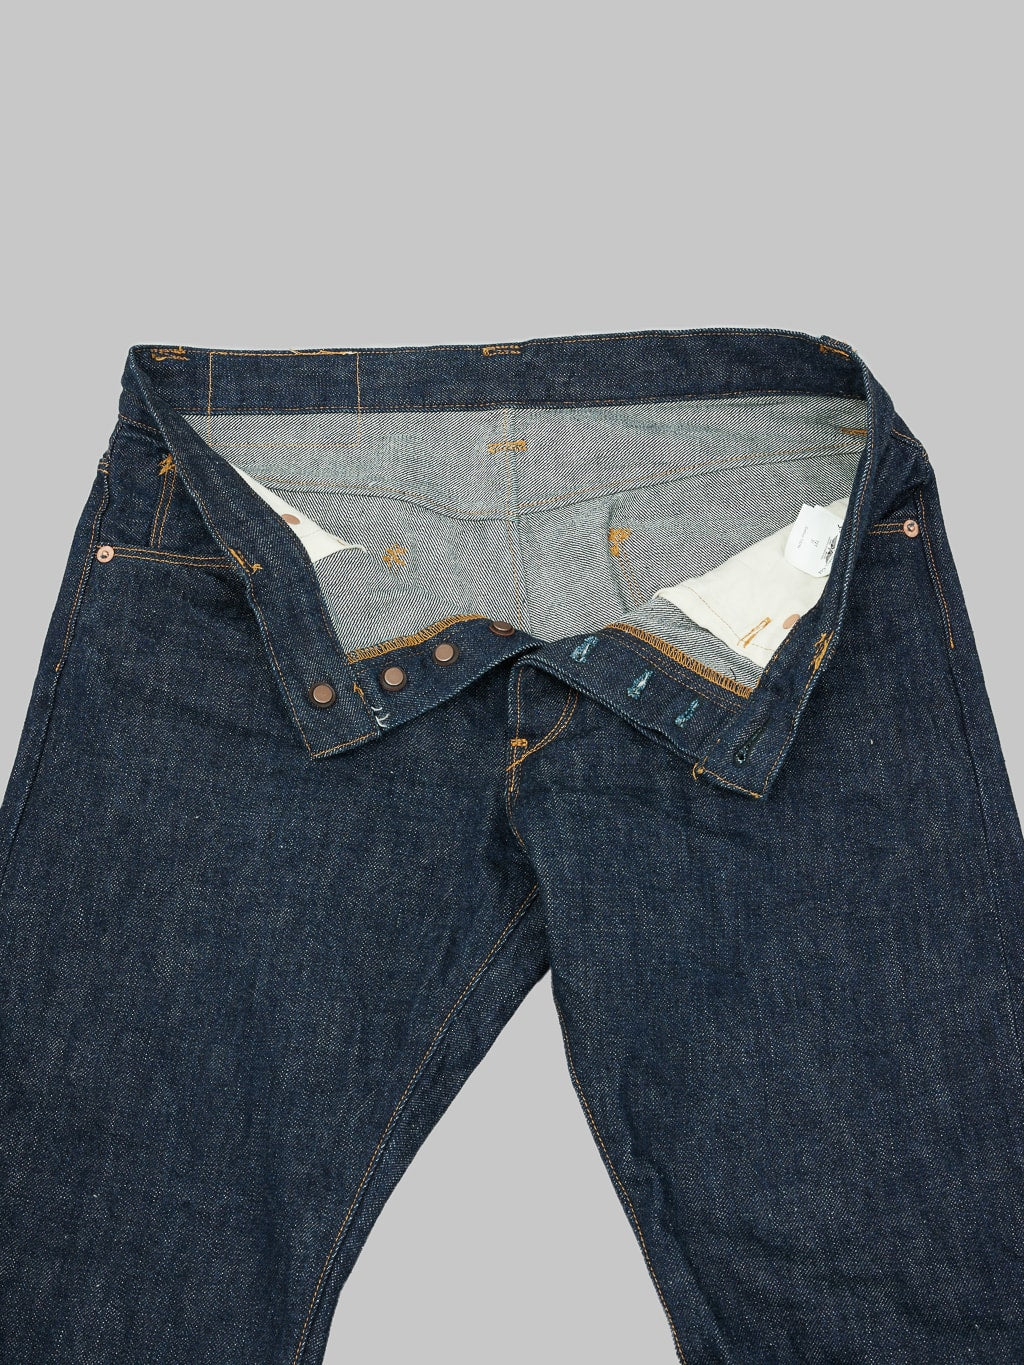 Stevenson Overall La Jolla 727 Slim Tapered Jeans  interior fabric